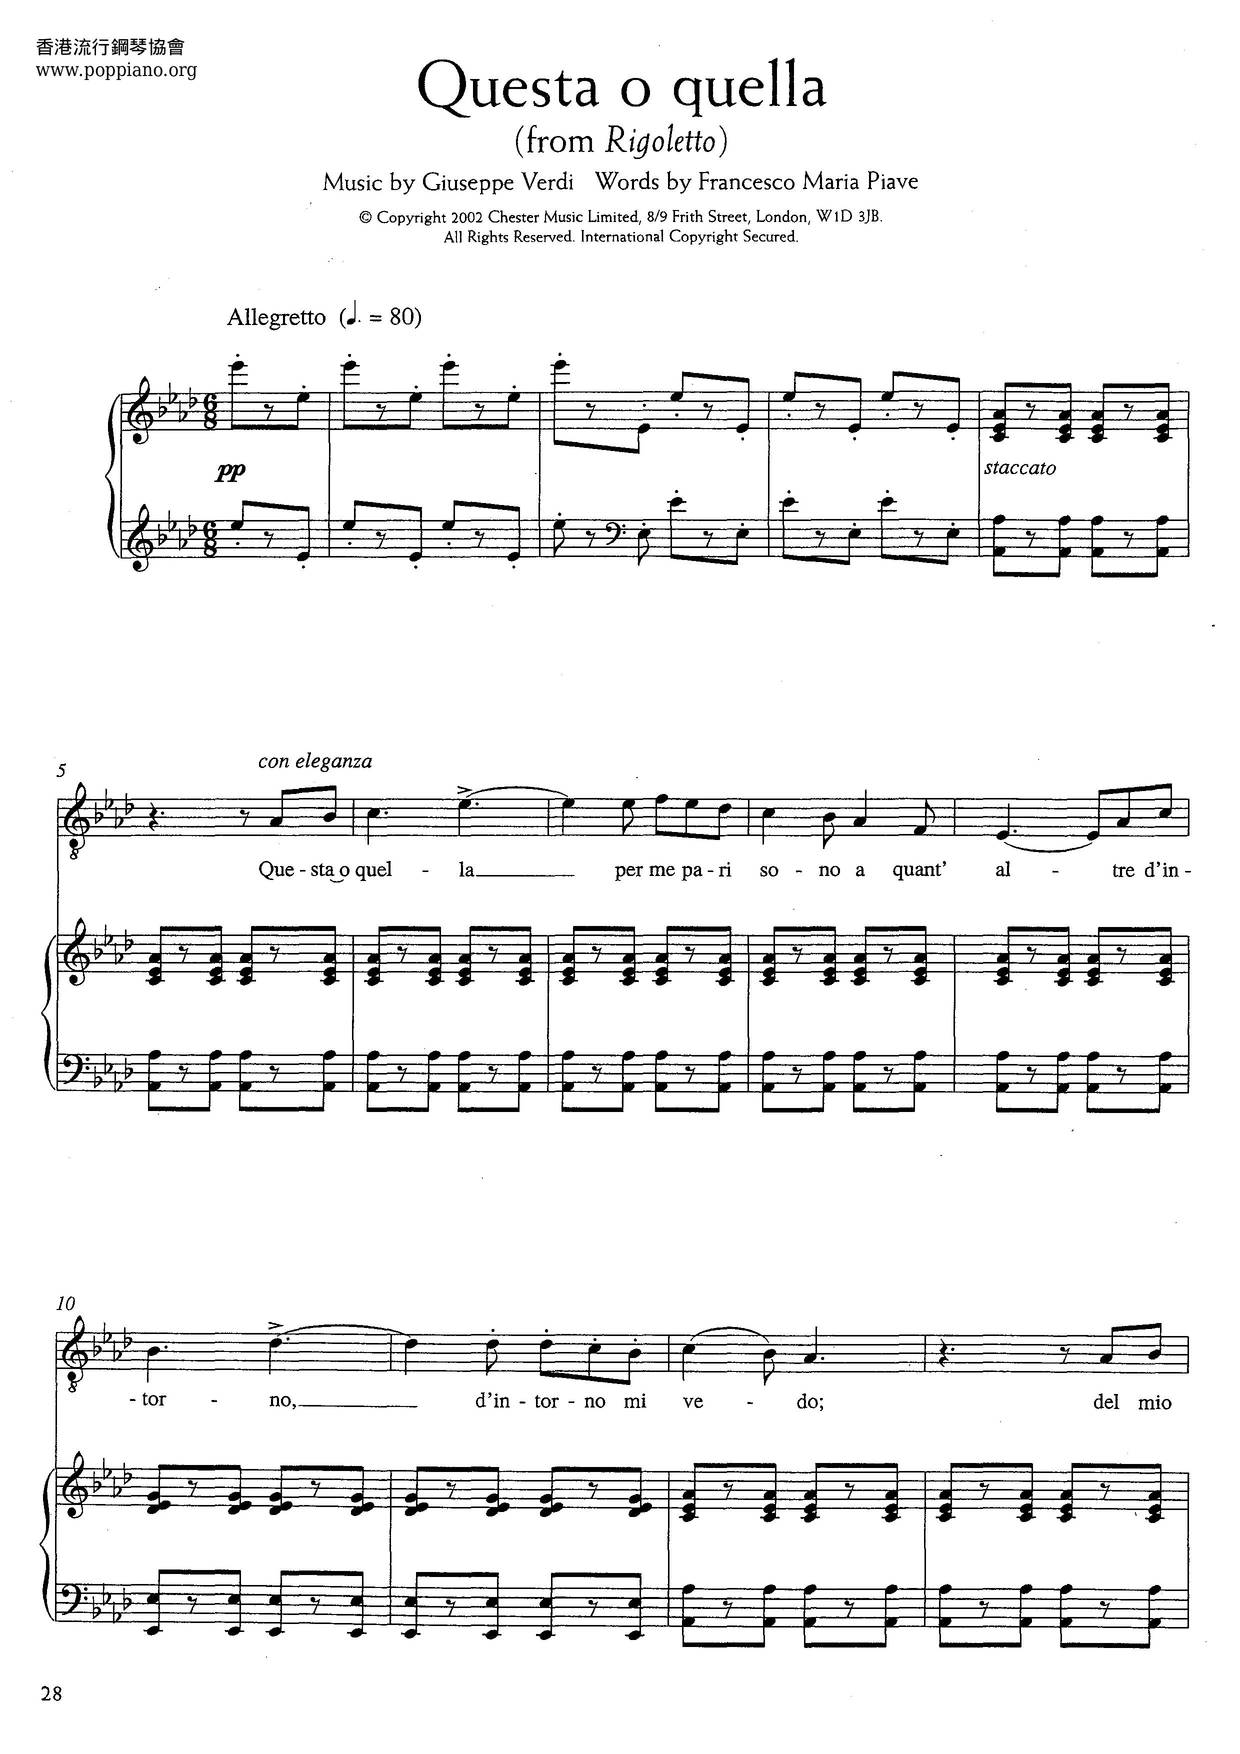 Questa O Quella From Rigoletto (Verdi) Score